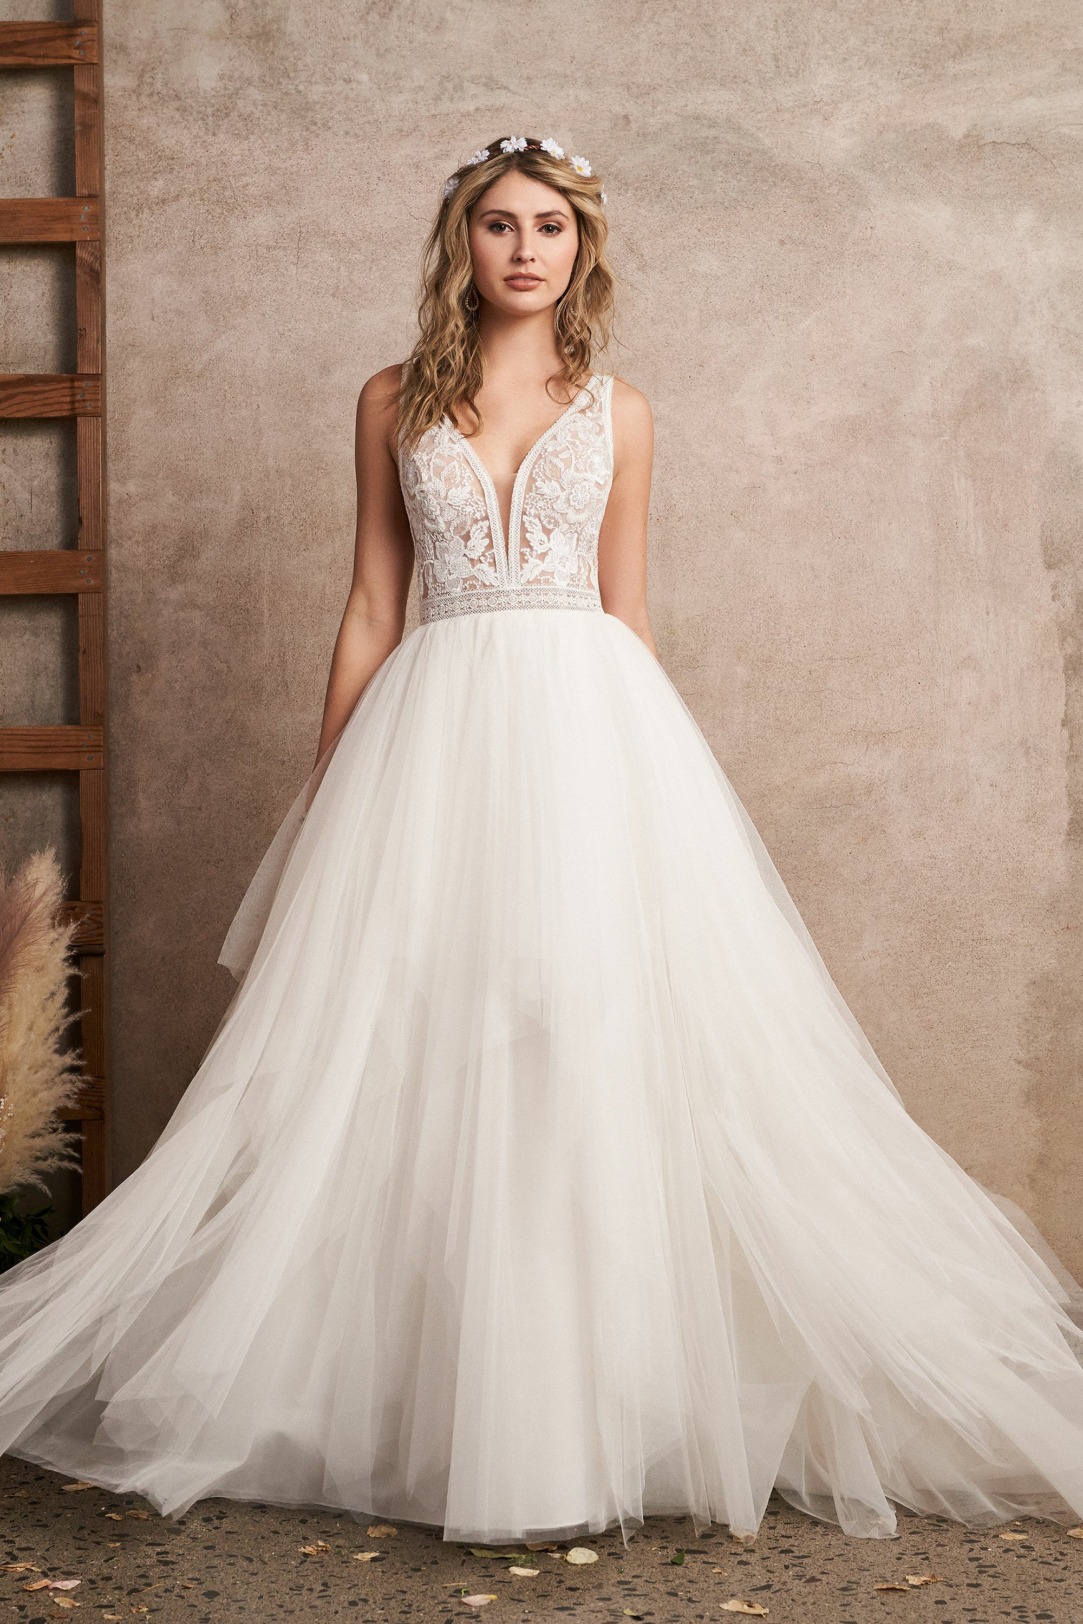 Hochzeitskleider Brautkleider im Prinzessinnen Stil Modell 66226 wunderschönes Spitzenoberteil mit V-Ausschnitt und mehrlagiger großer Tüllrock Bild 1